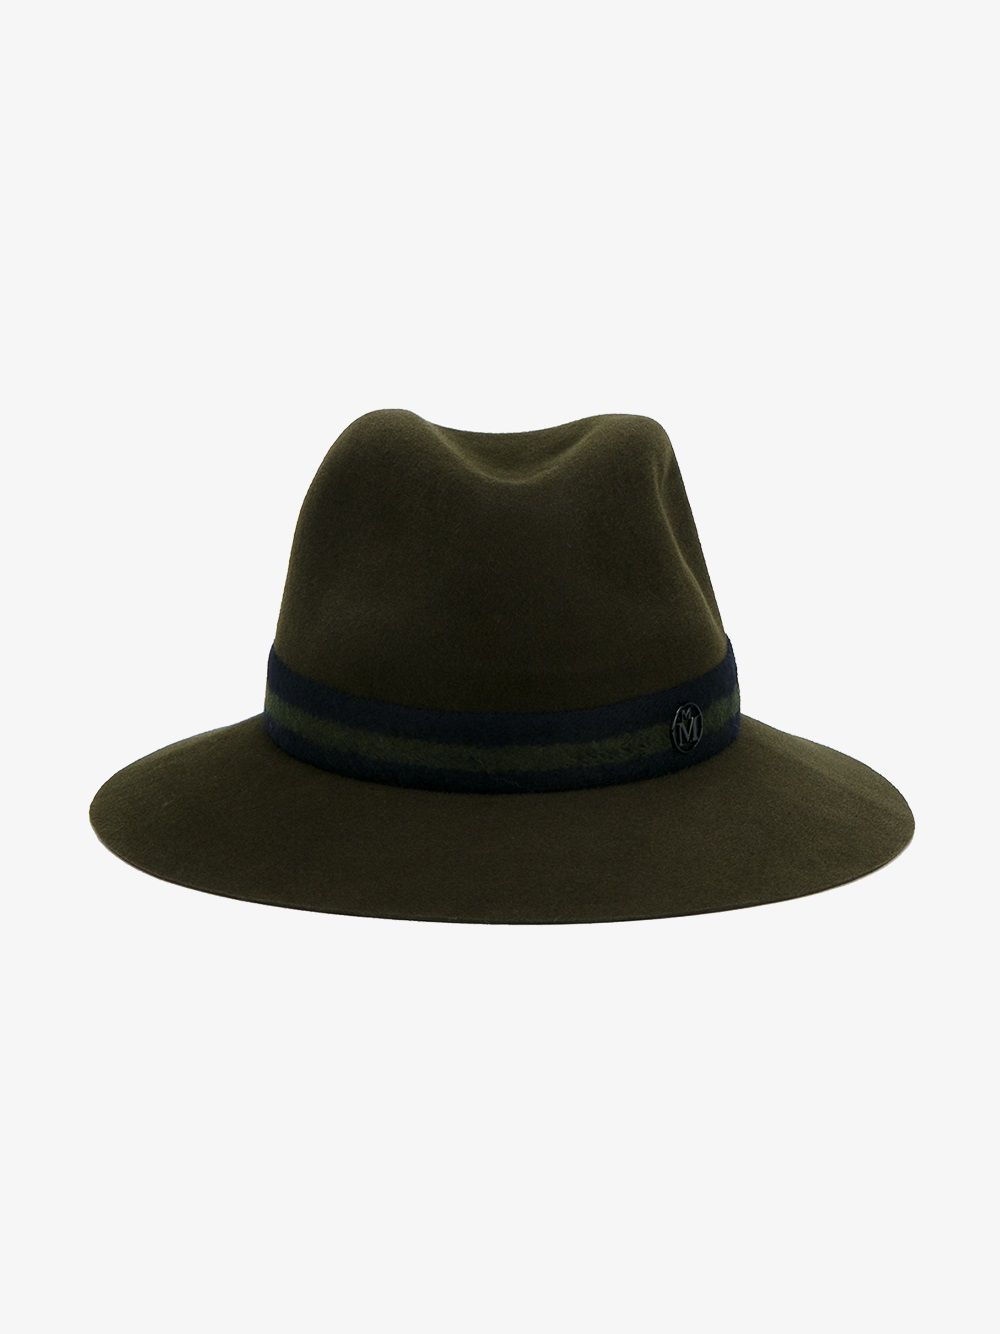 Maison Michel Green Felt Henrietta Fedora hat | Browns Fashion